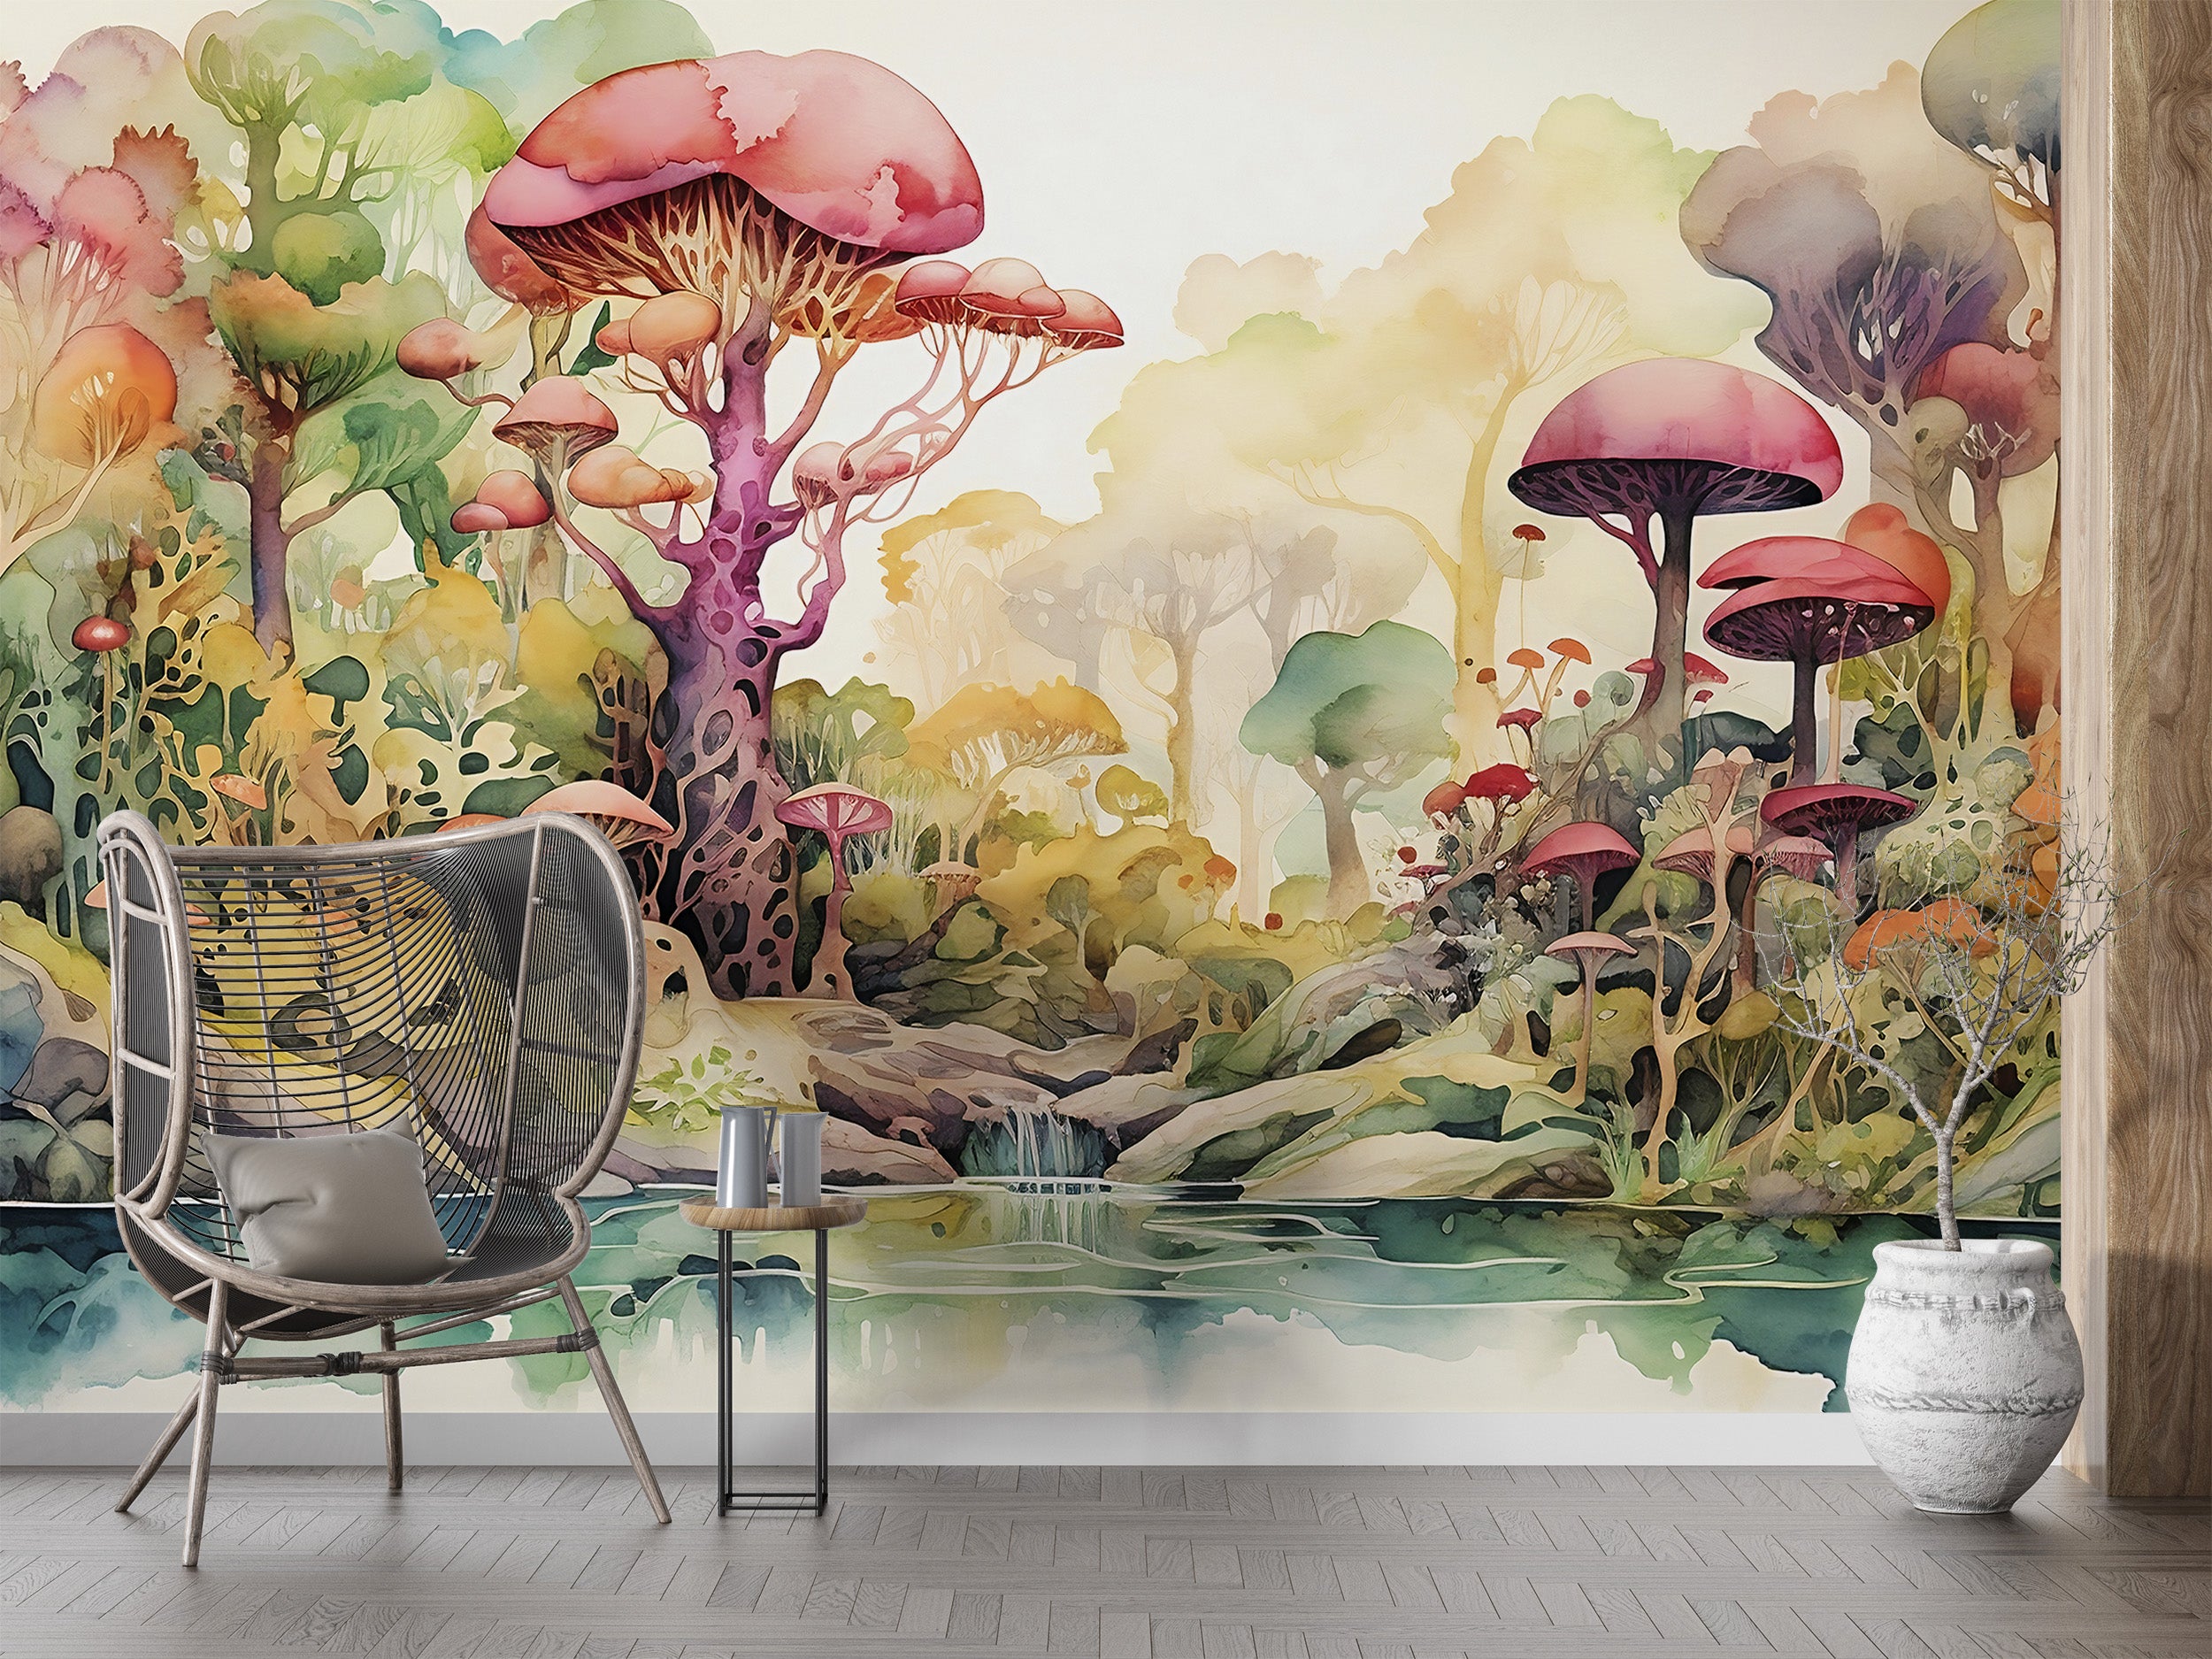 Whimsical Mushroom Forest Mural for Kids' Rooms